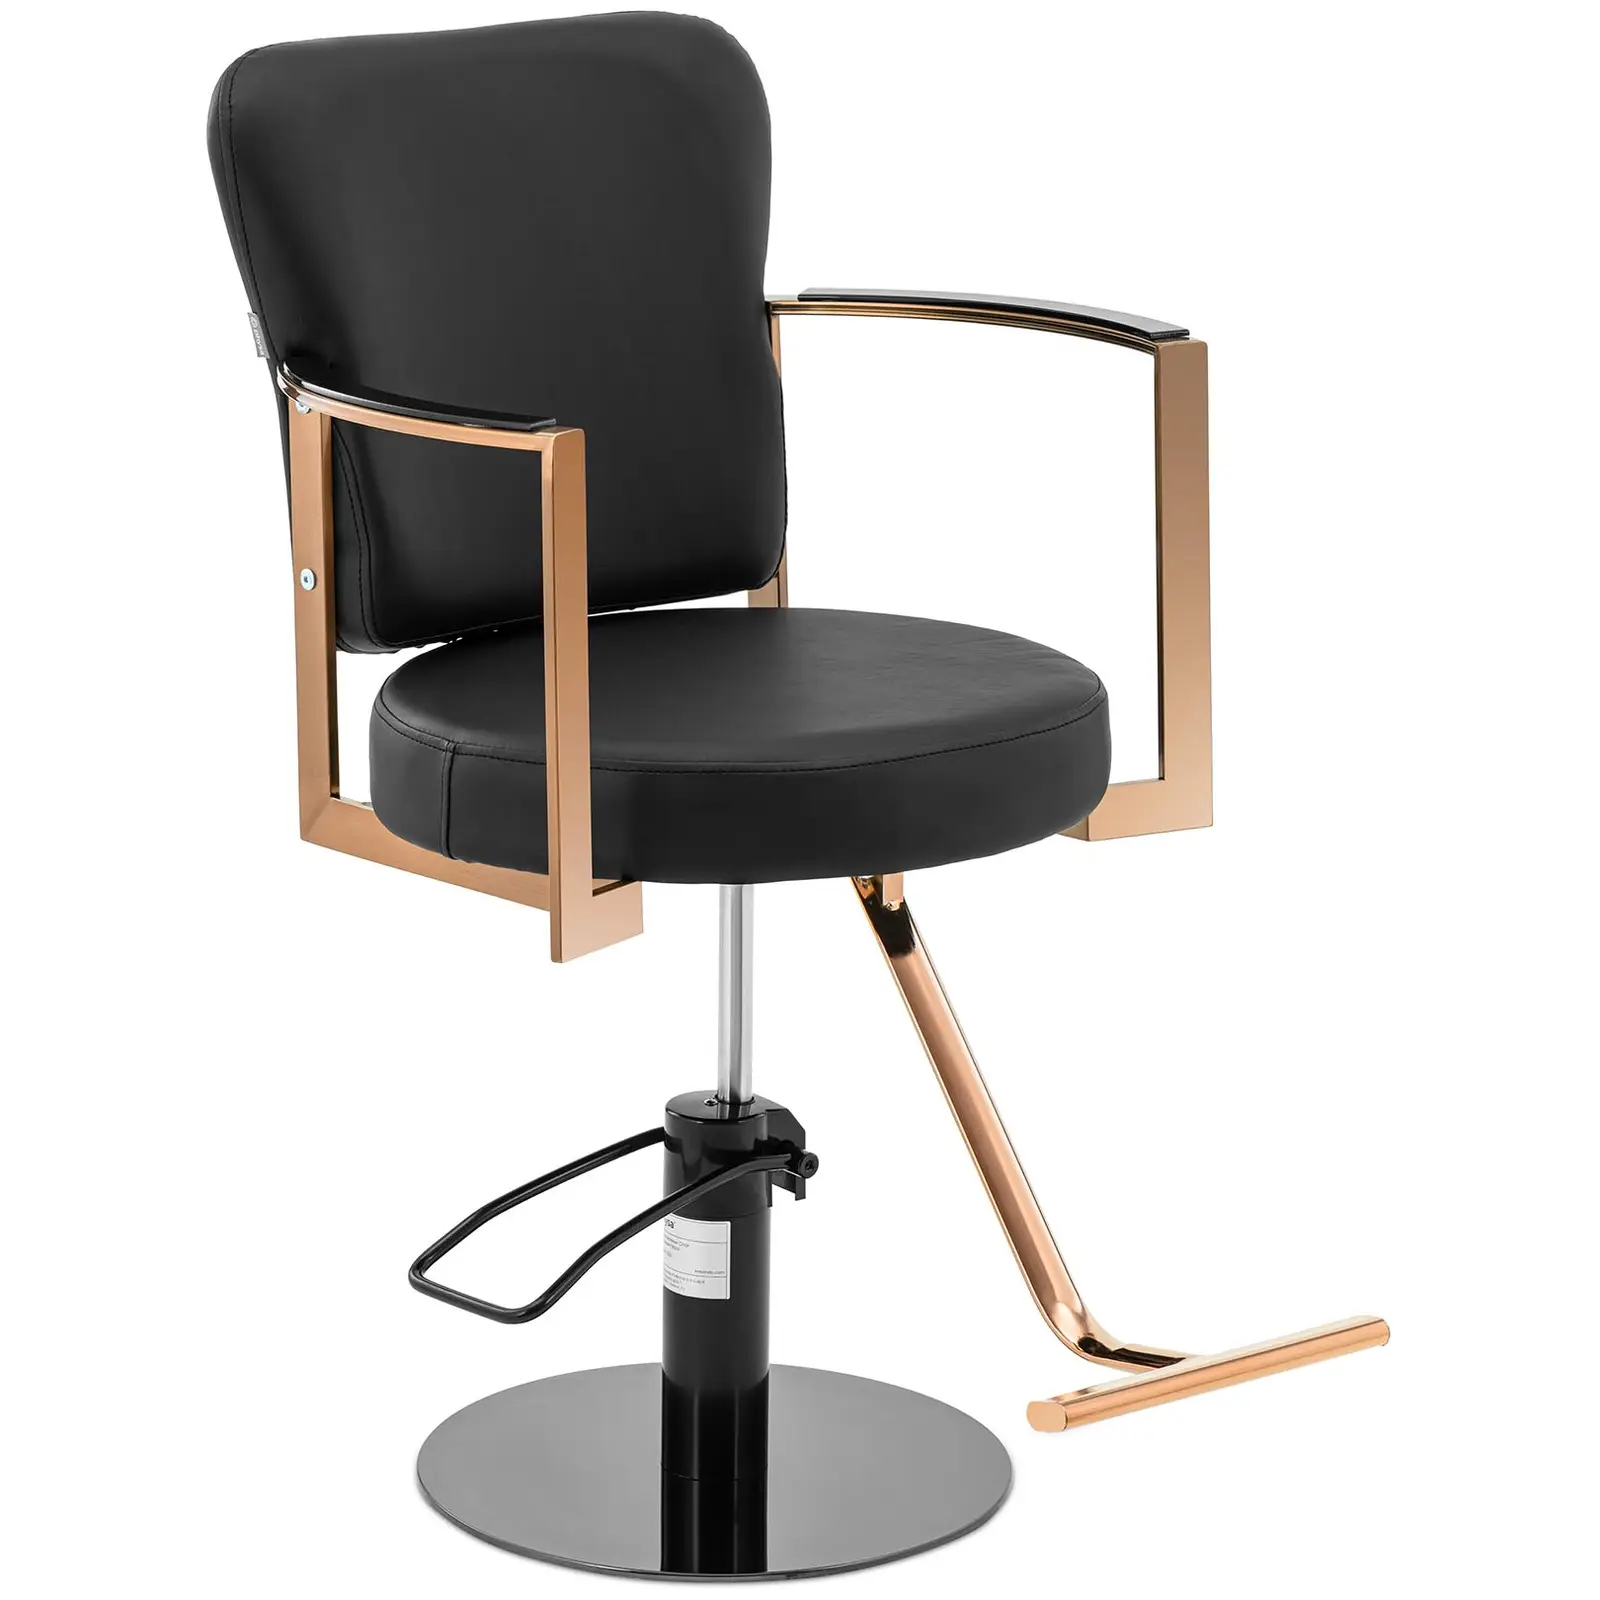 Cadeira de cabeleireiro com apoio para os pés - 900 - 1050 mm - 200 kg - Rosa dourado, Preto